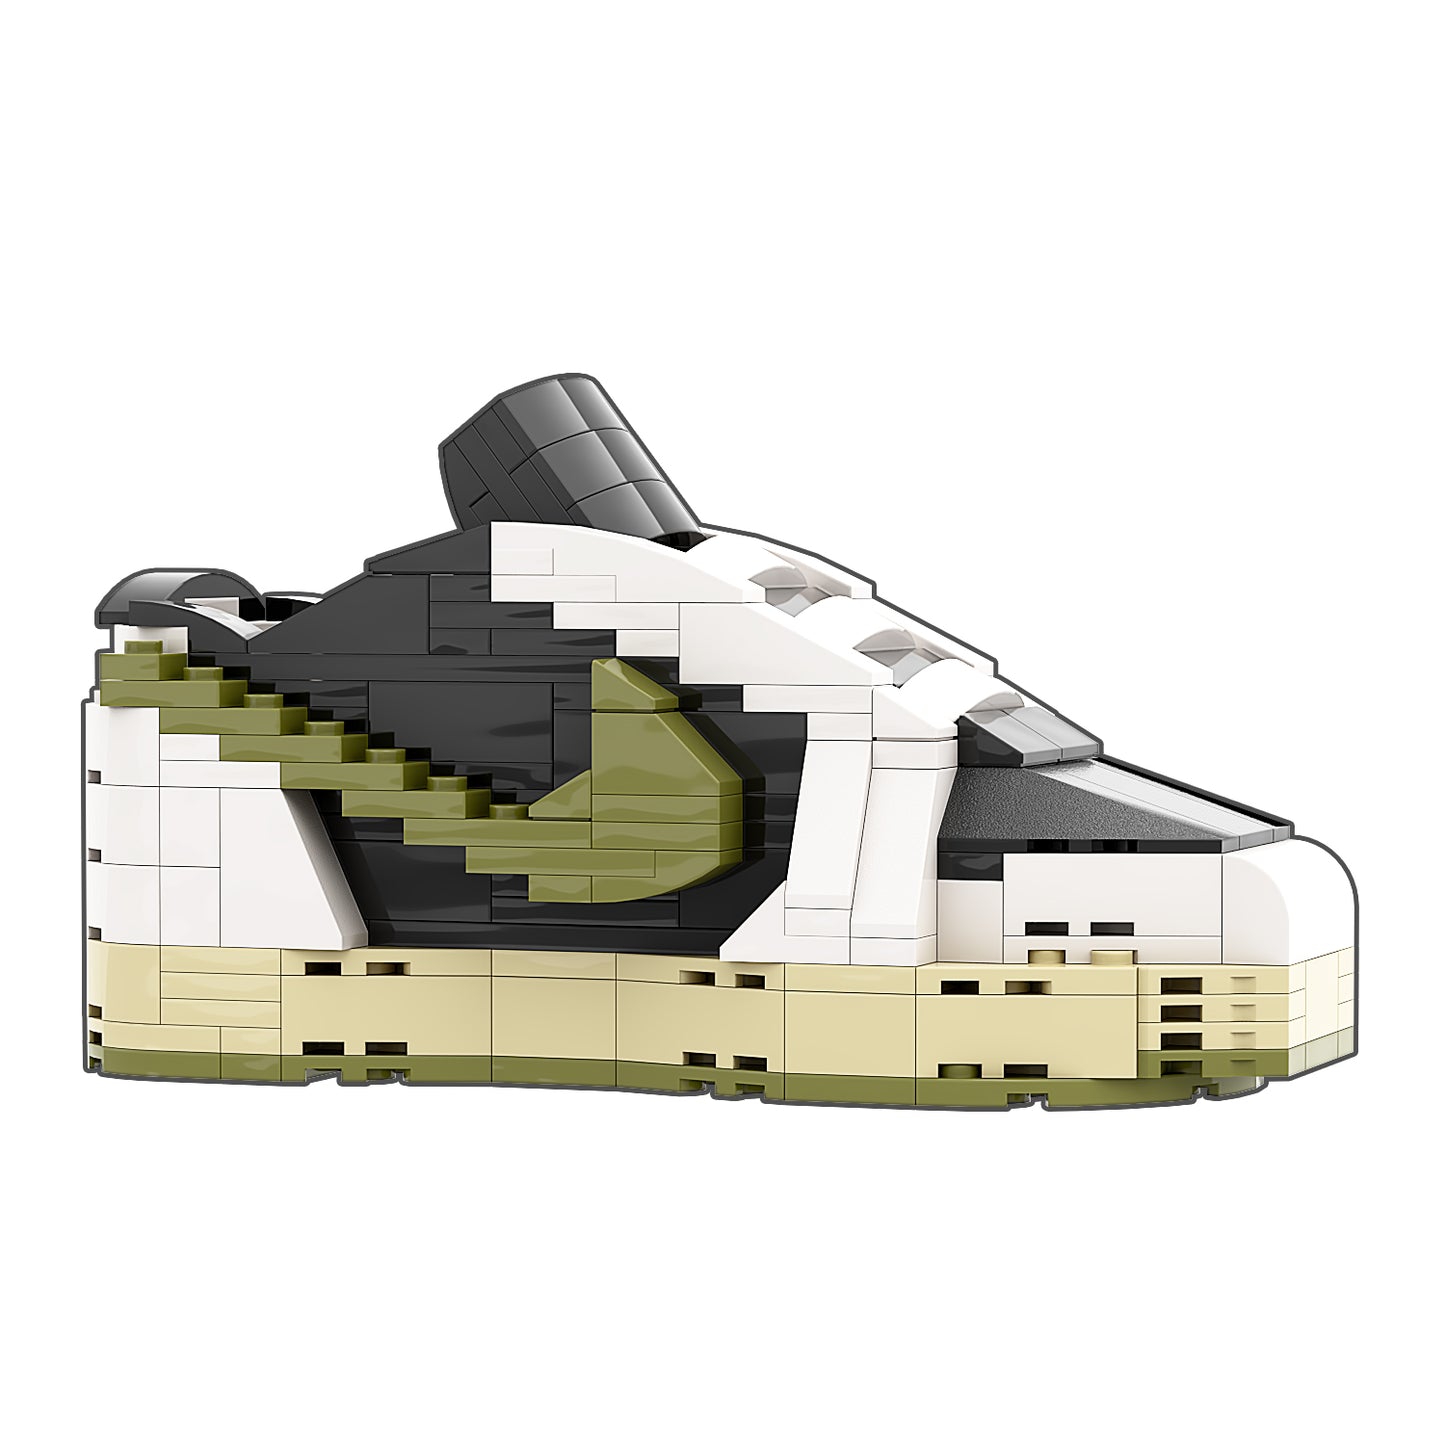 REGULAR "AJ1 Travis Scott Olive Low" Sneaker Bricks with Mini Figure